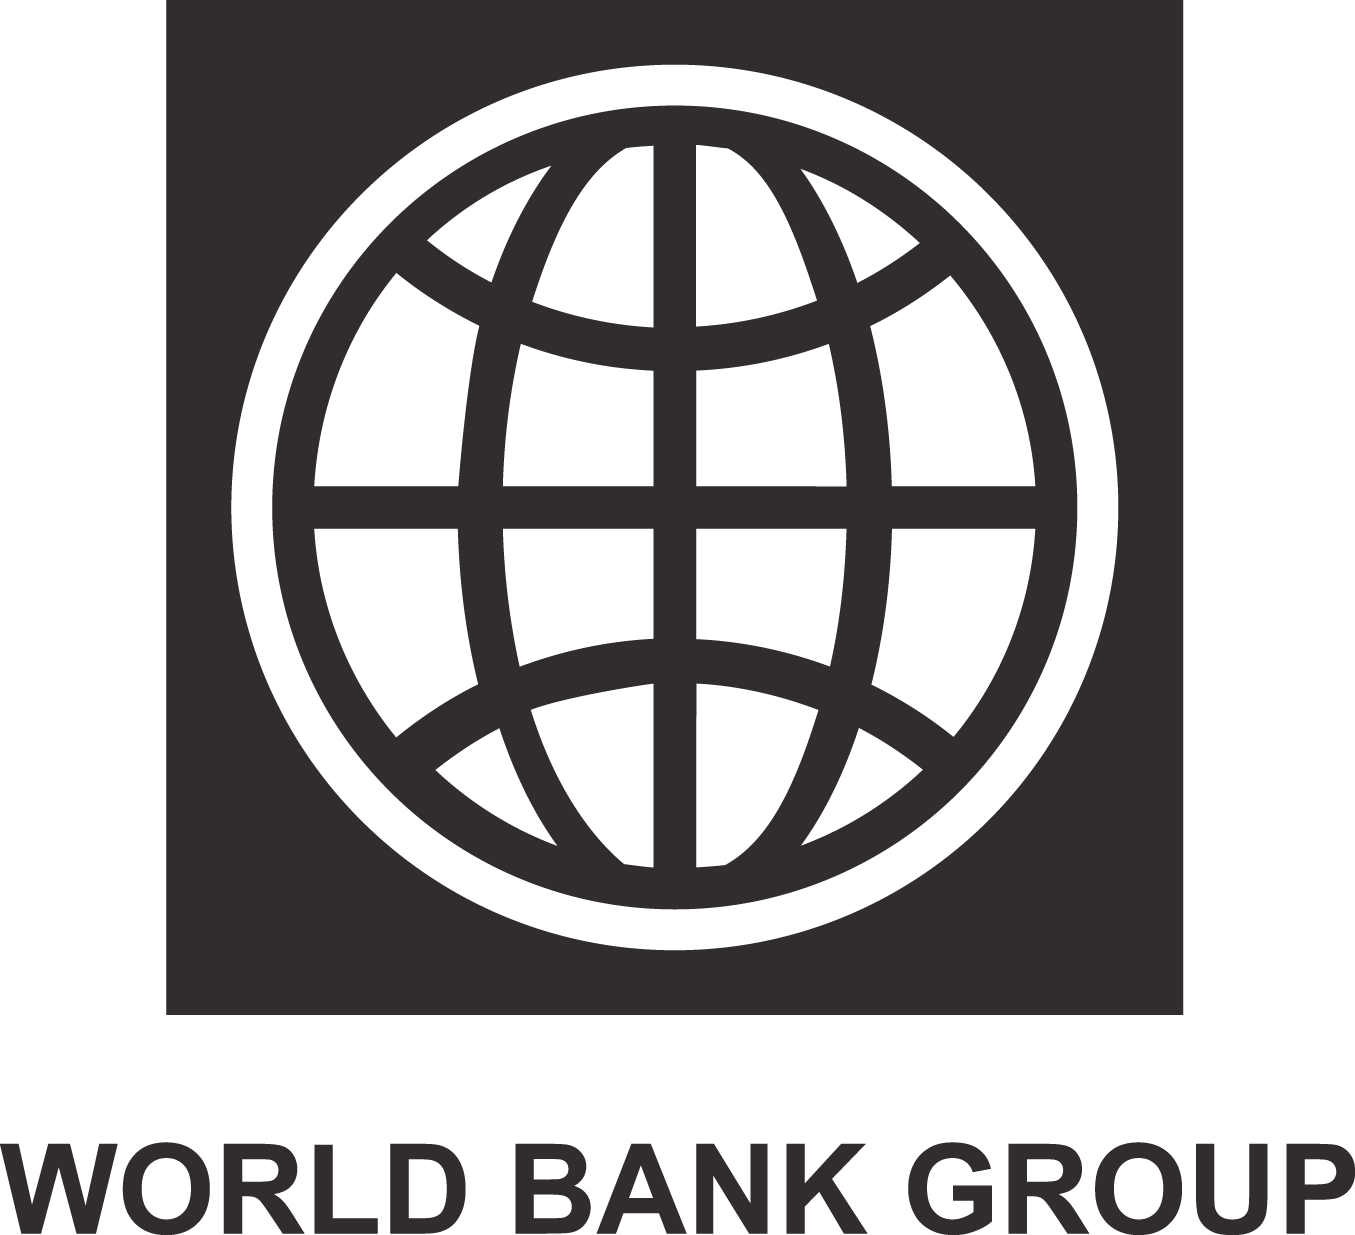 Всемирный банк деятельность. Значок Всемирного банка. Логотип World Bank Group. Логотипы Мировых банков. Всемирный банк (мировой банк).